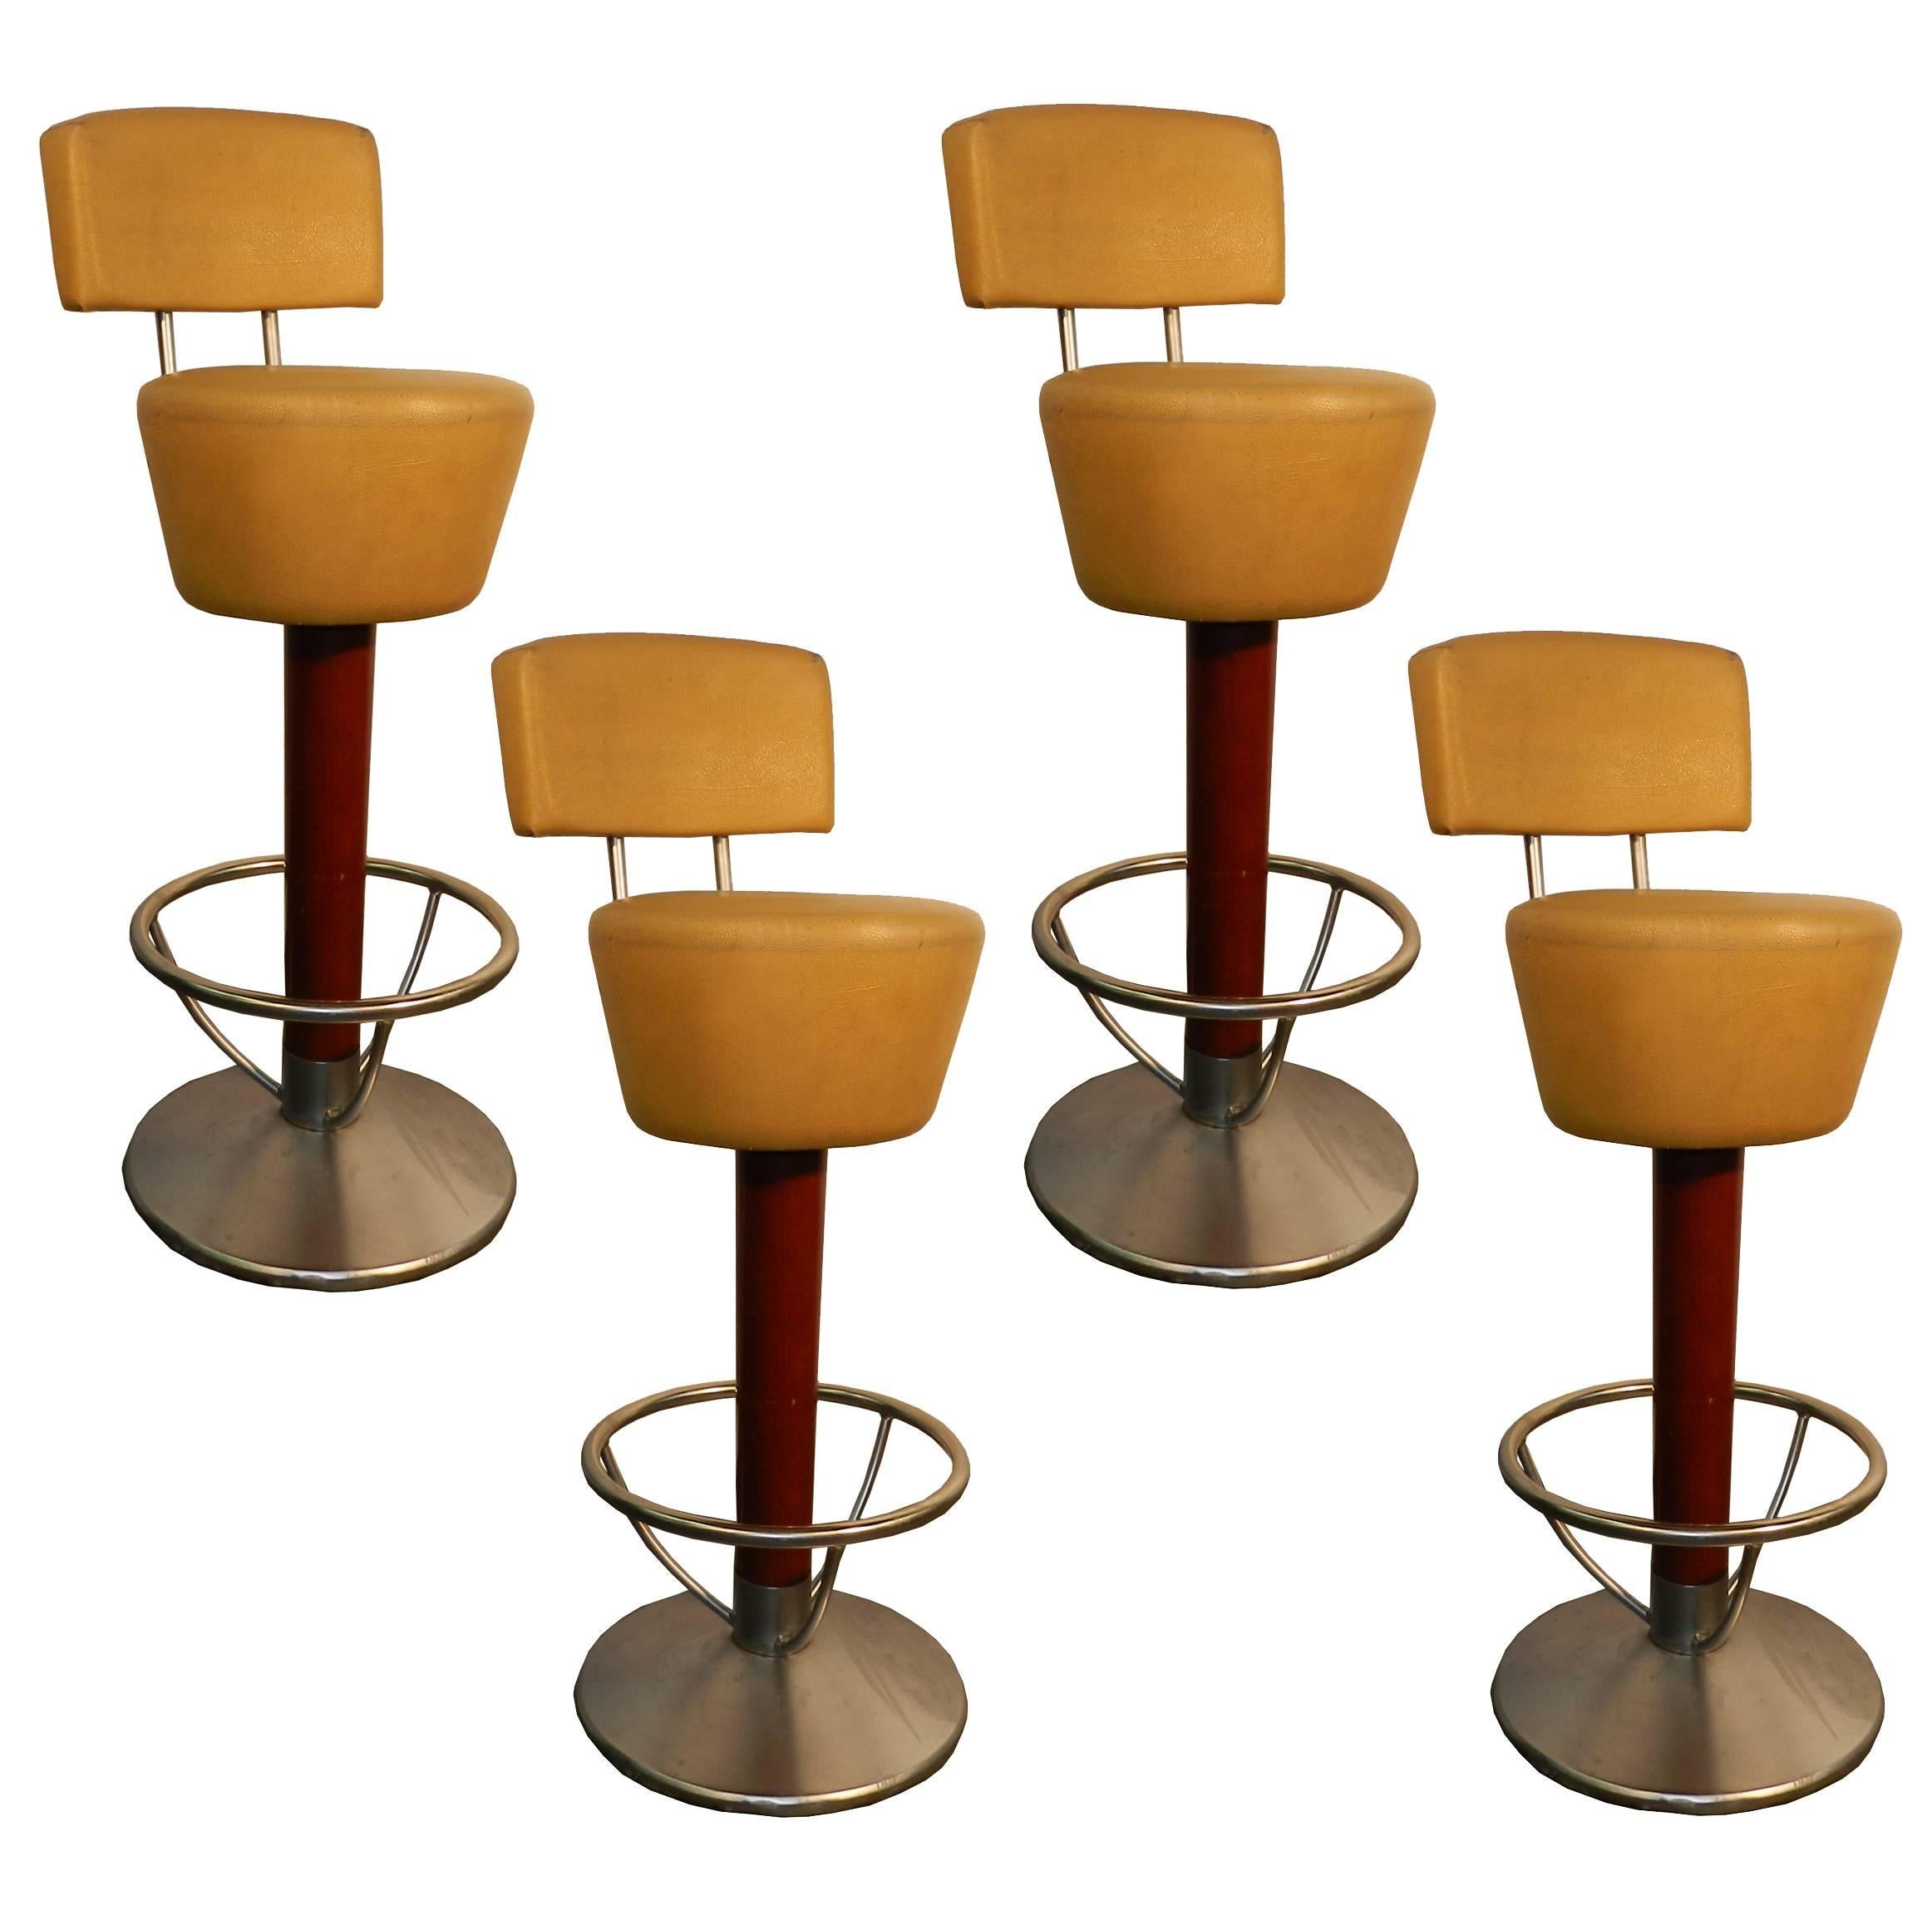 Suite de quatre tabourets de bar en hêtre teinté, acier et similicuir, vers 1970